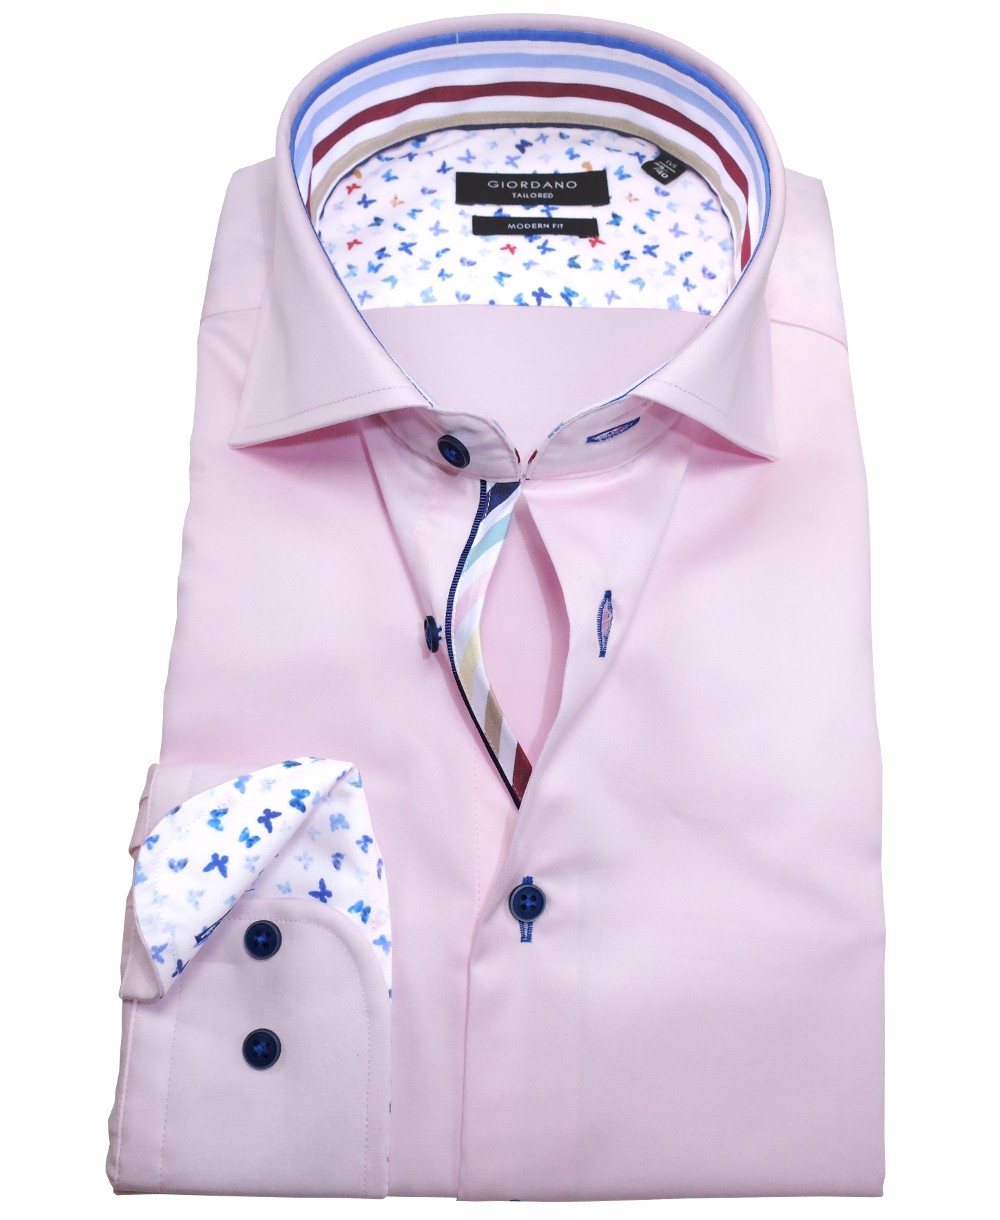 fairen rosa bunten führender - Marken Modern Giordano Herrenmode Fit Langarmhemd Hochwertige Patches weiss mit zu